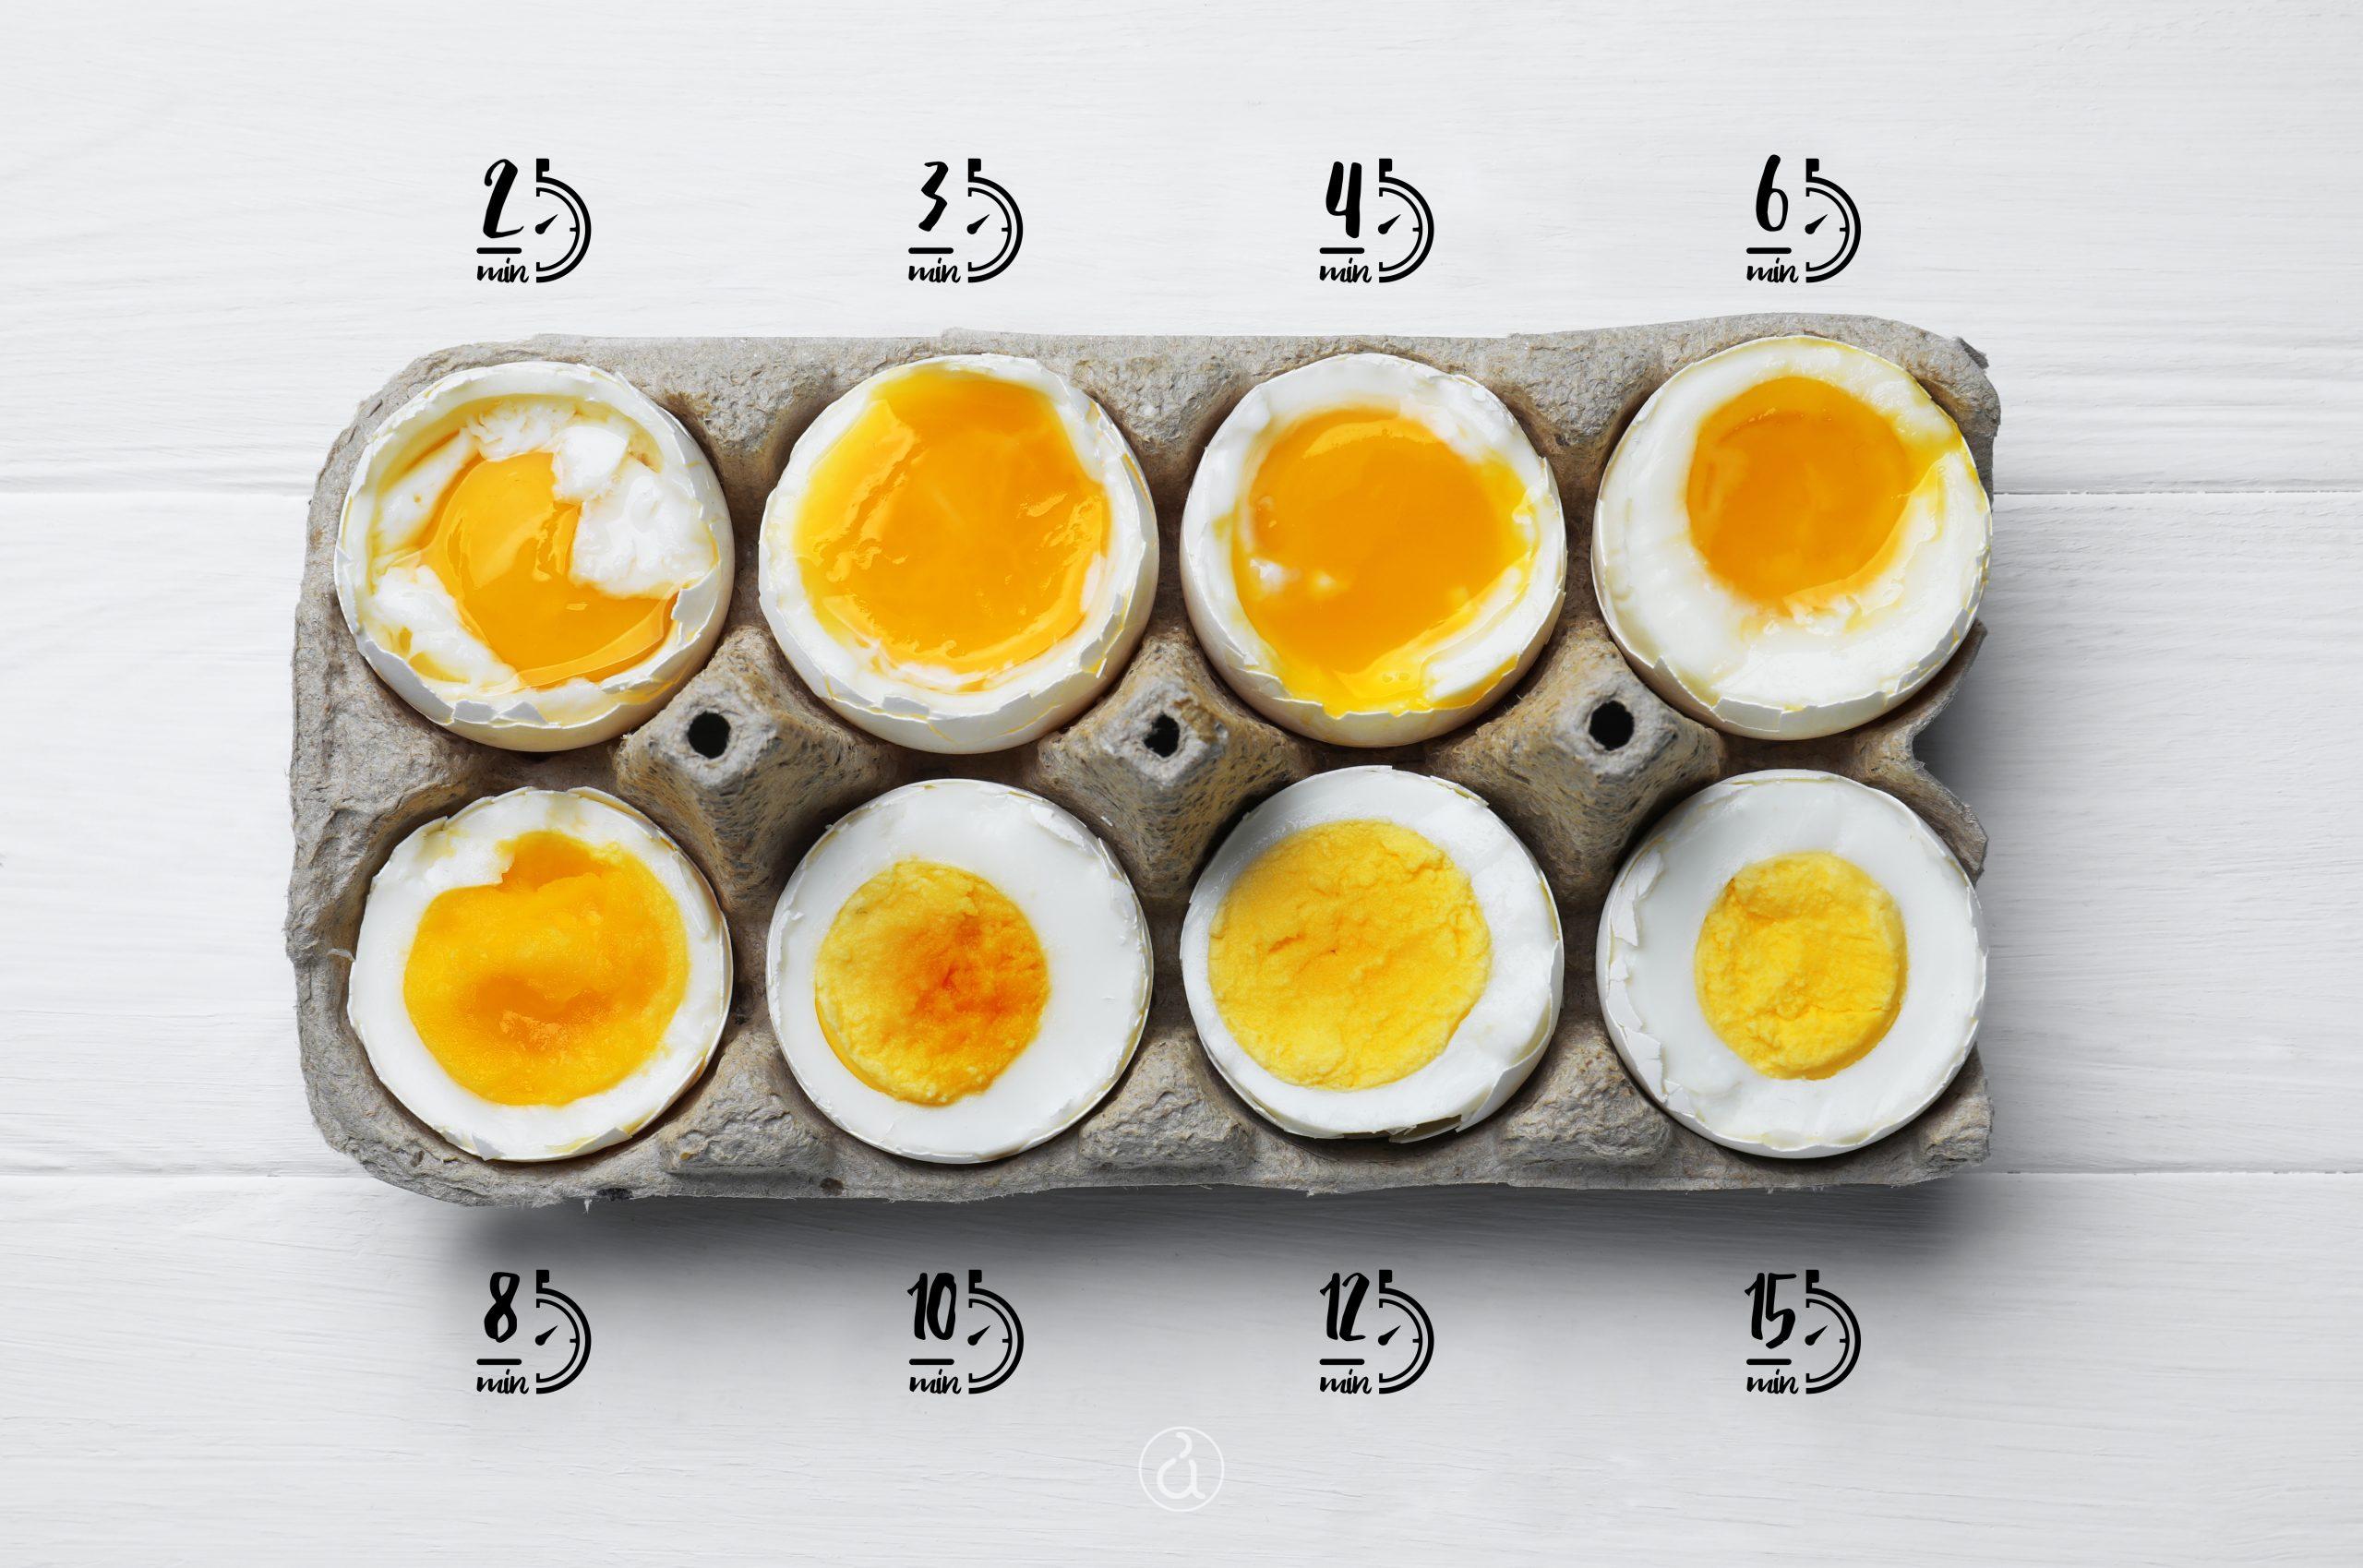 Ποση ωρα βραζουμε τα αυγα Αργυρω ;